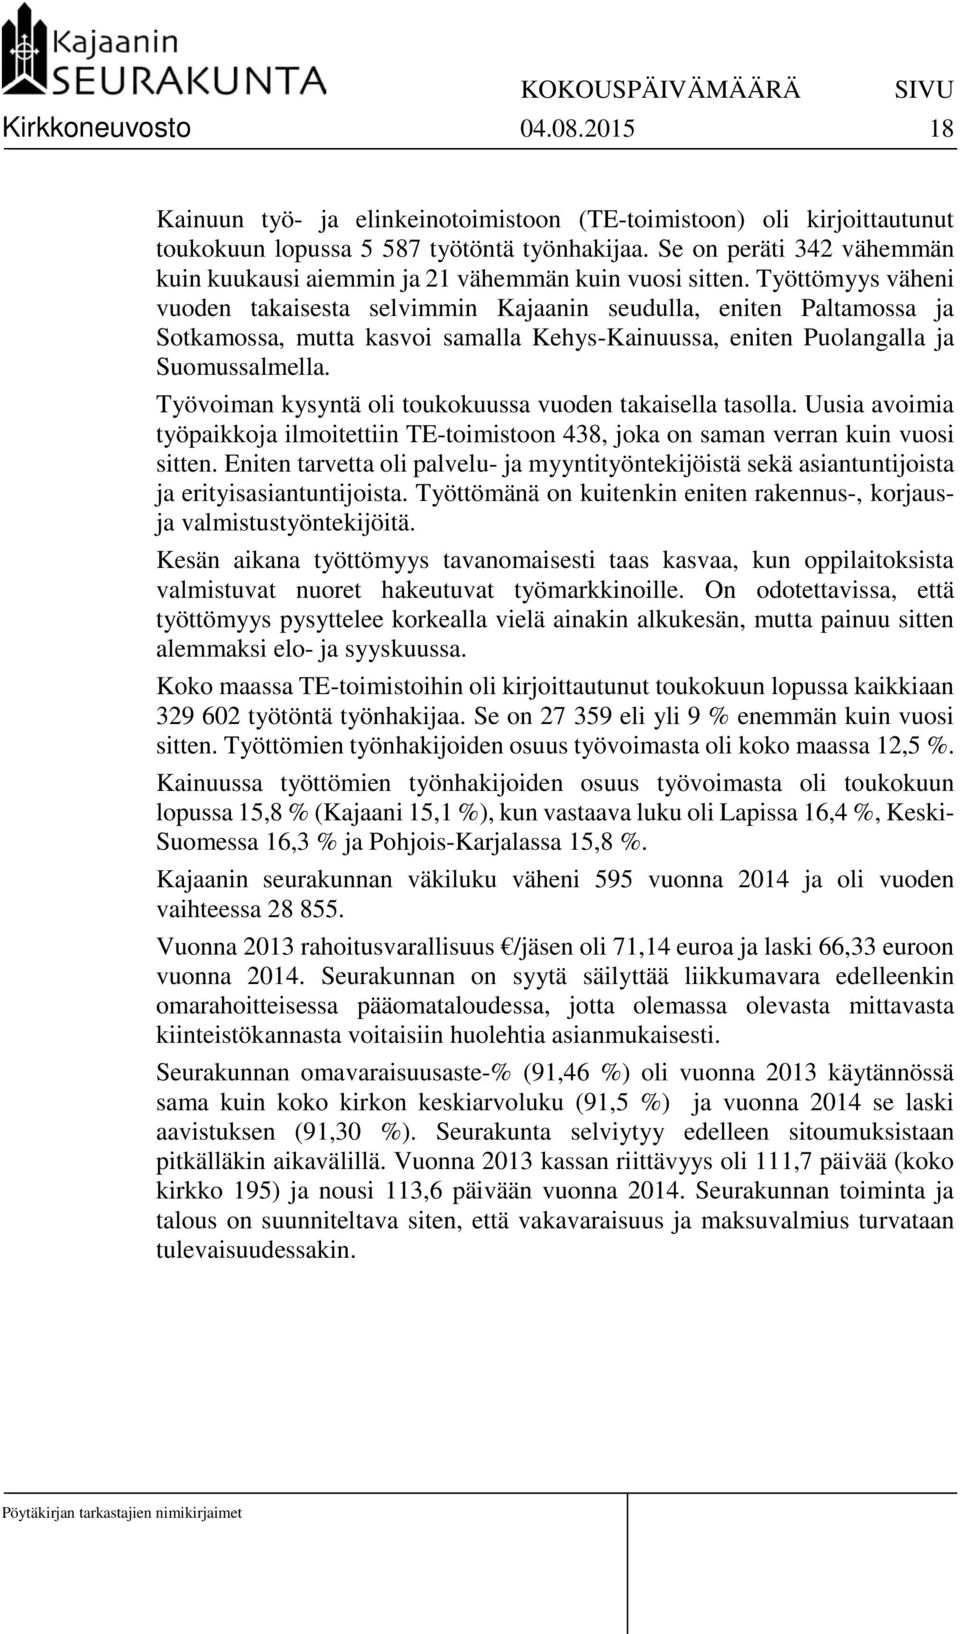 Työttömyys väheni vuoden takaisesta selvimmin Kajaanin seudulla, eniten Paltamossa ja Sotkamossa, mutta kasvoi samalla Kehys-Kainuussa, eniten Puolangalla ja Suomussalmella.